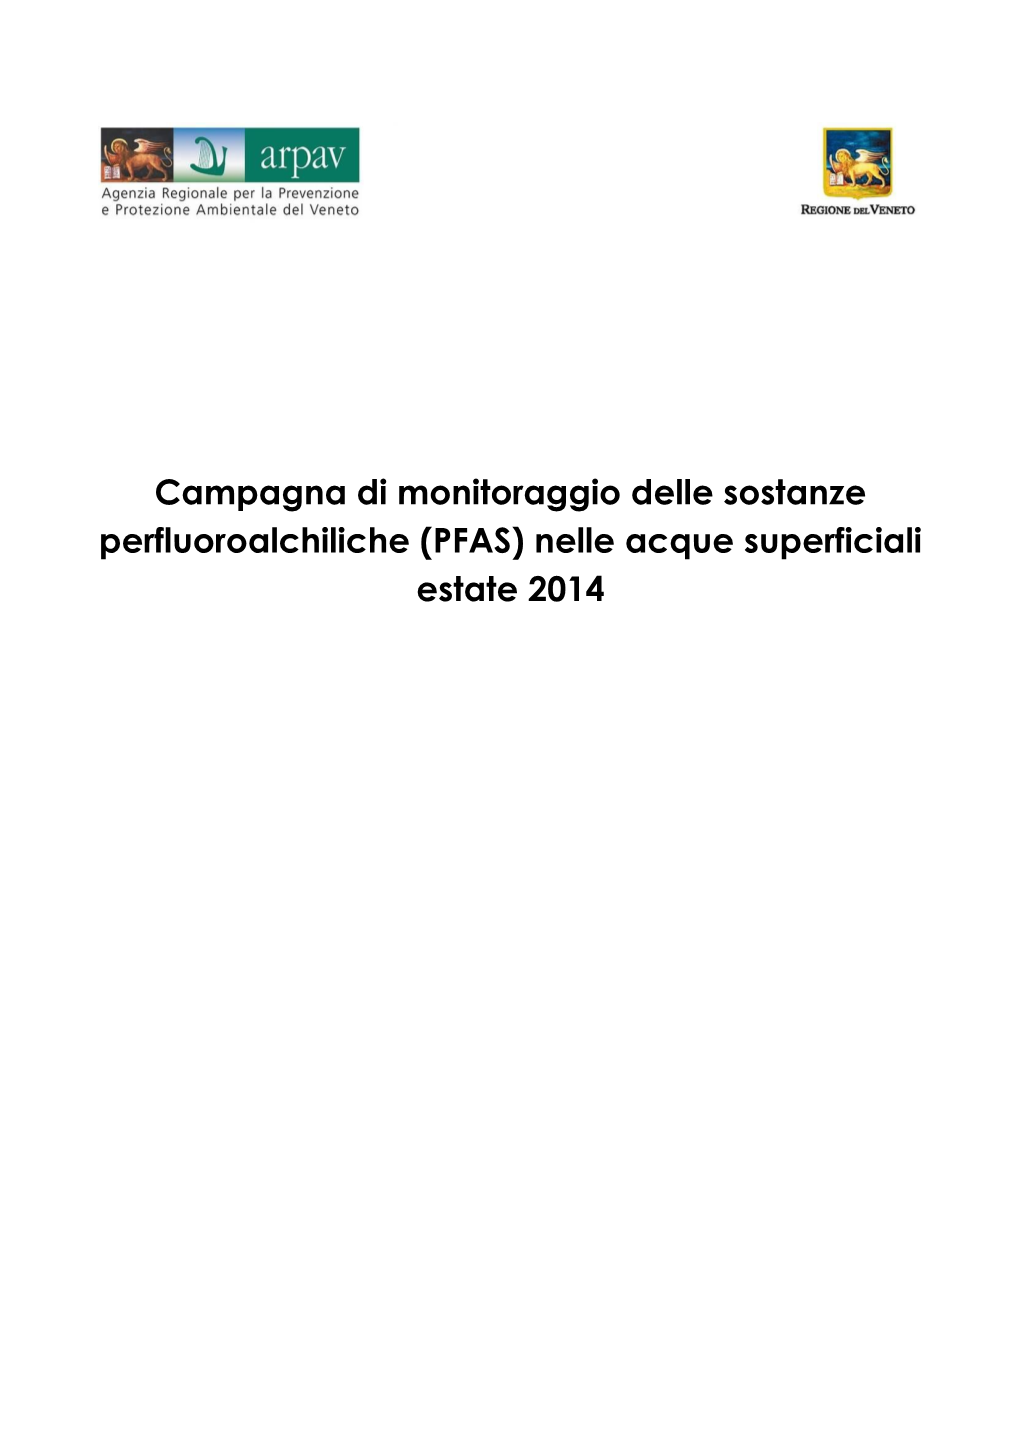 Campagna Di Monitoraggio Delle Sostanze Perfluoroalchiliche (PFAS) Nelle Acque Superficiali Estate 2014